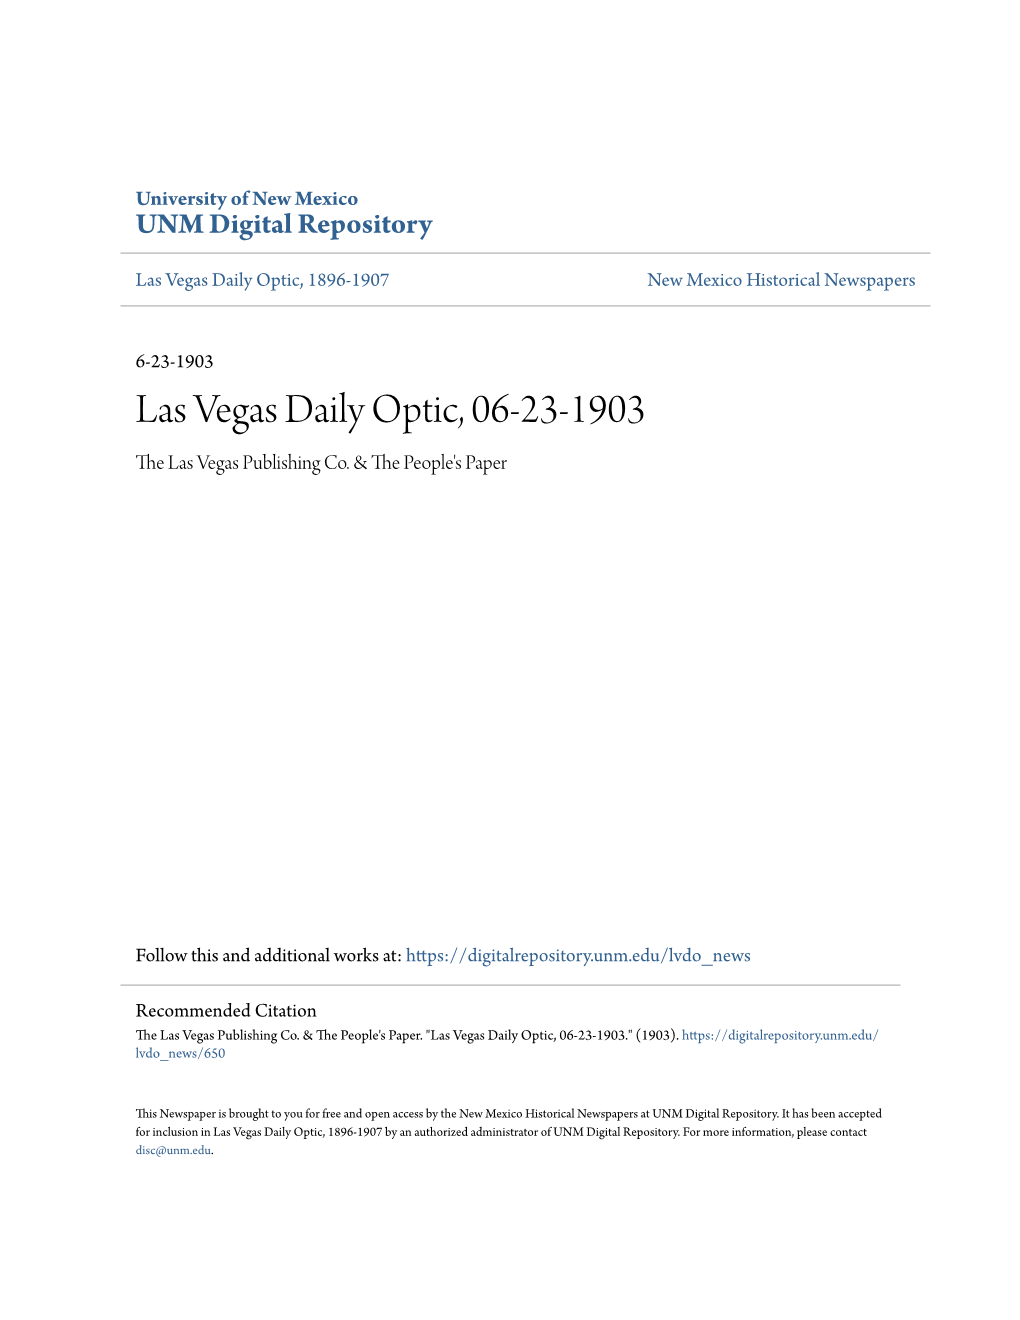 Las Vegas Daily Optic, 06-23-1903 the Las Vegas Publishing Co